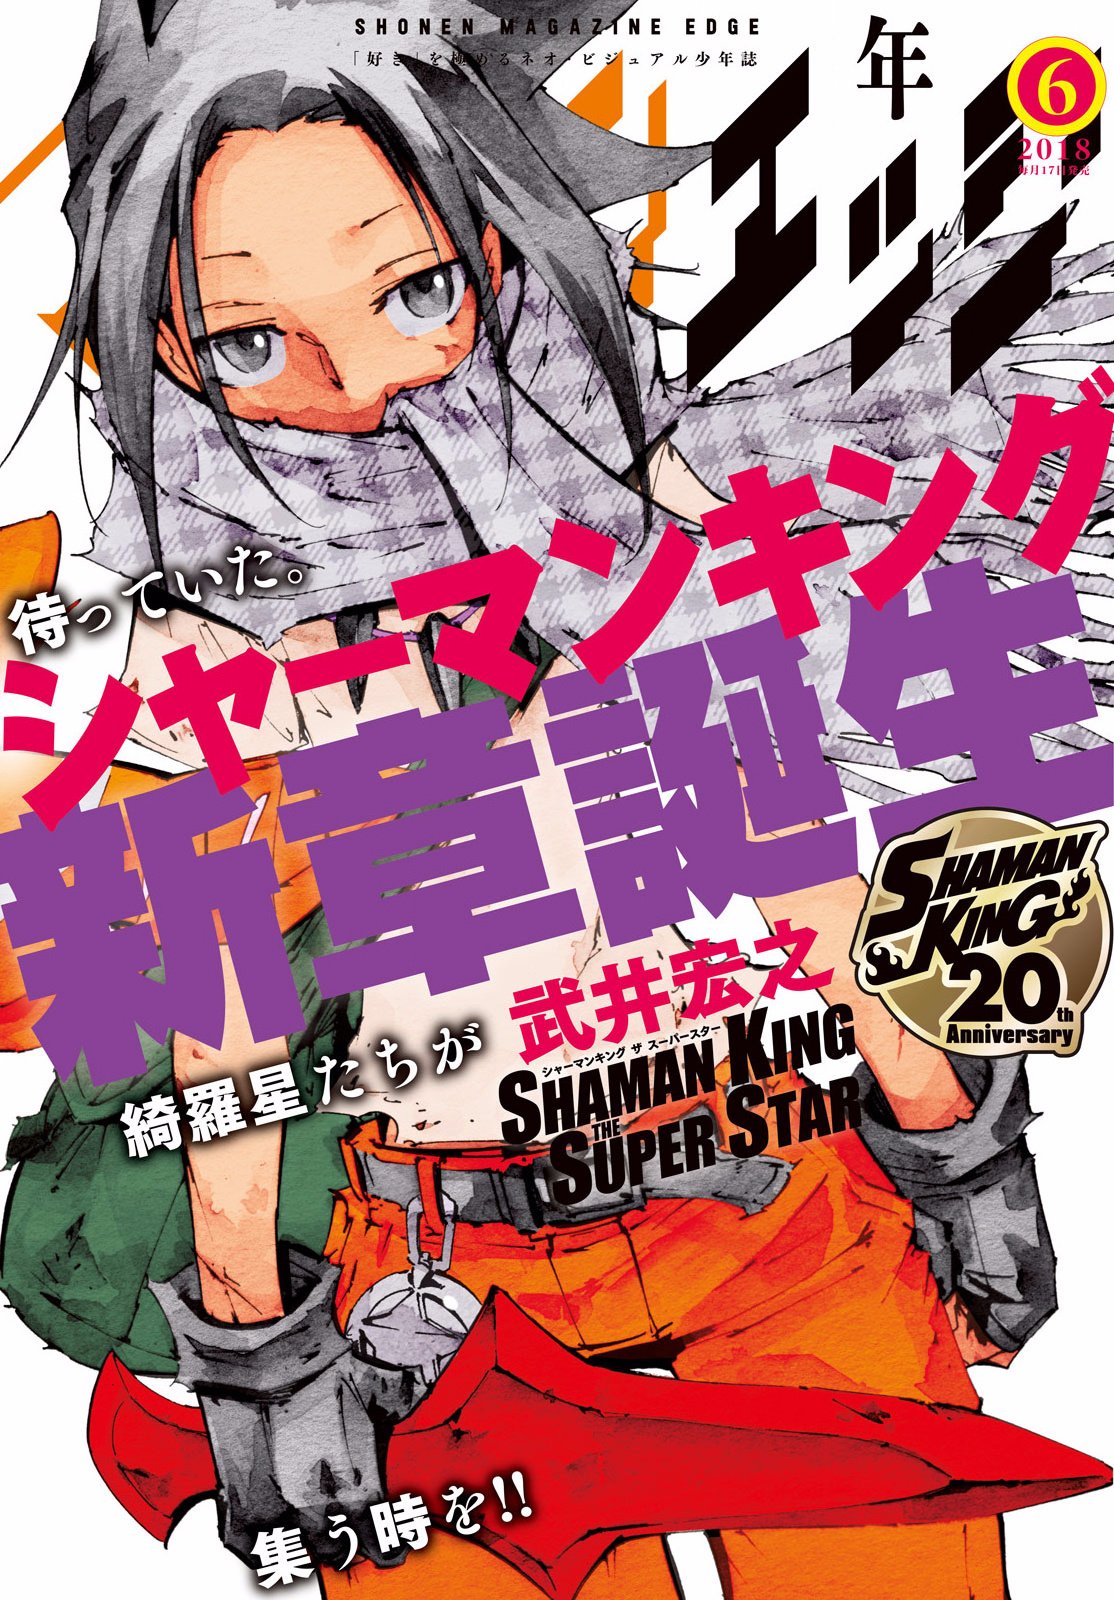 Shonen Magazine Edge June 18 Cover Shaman King The Super Star Manga